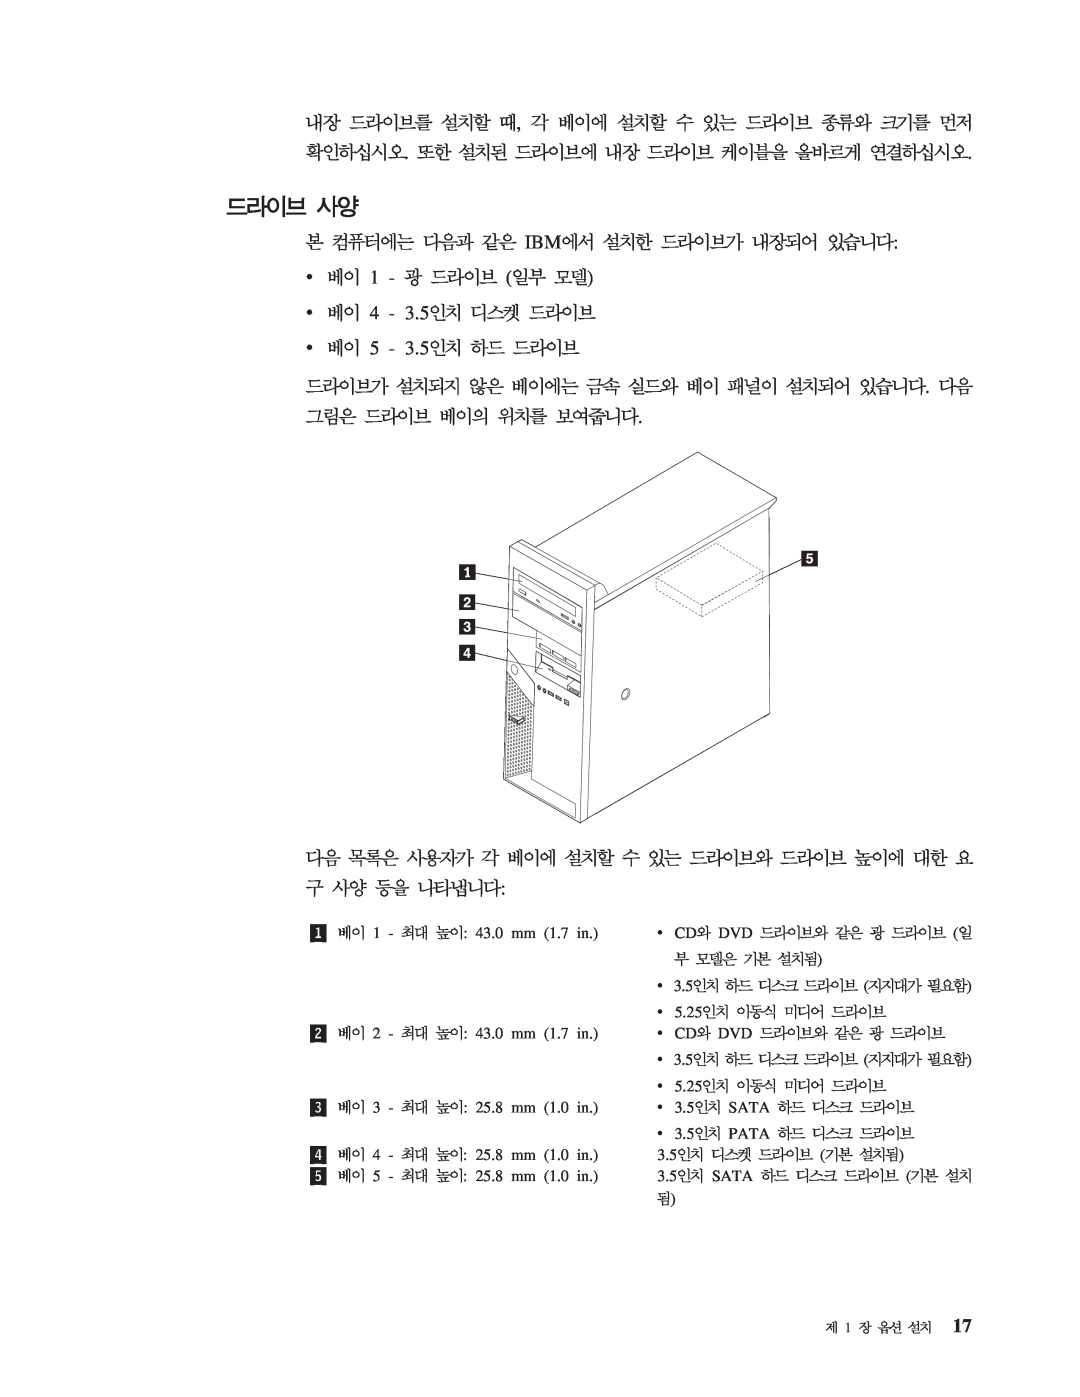 IBM 8143 manual IBM v v 4 v 5, Cd Dvd, 5.25, Sata, Pata 